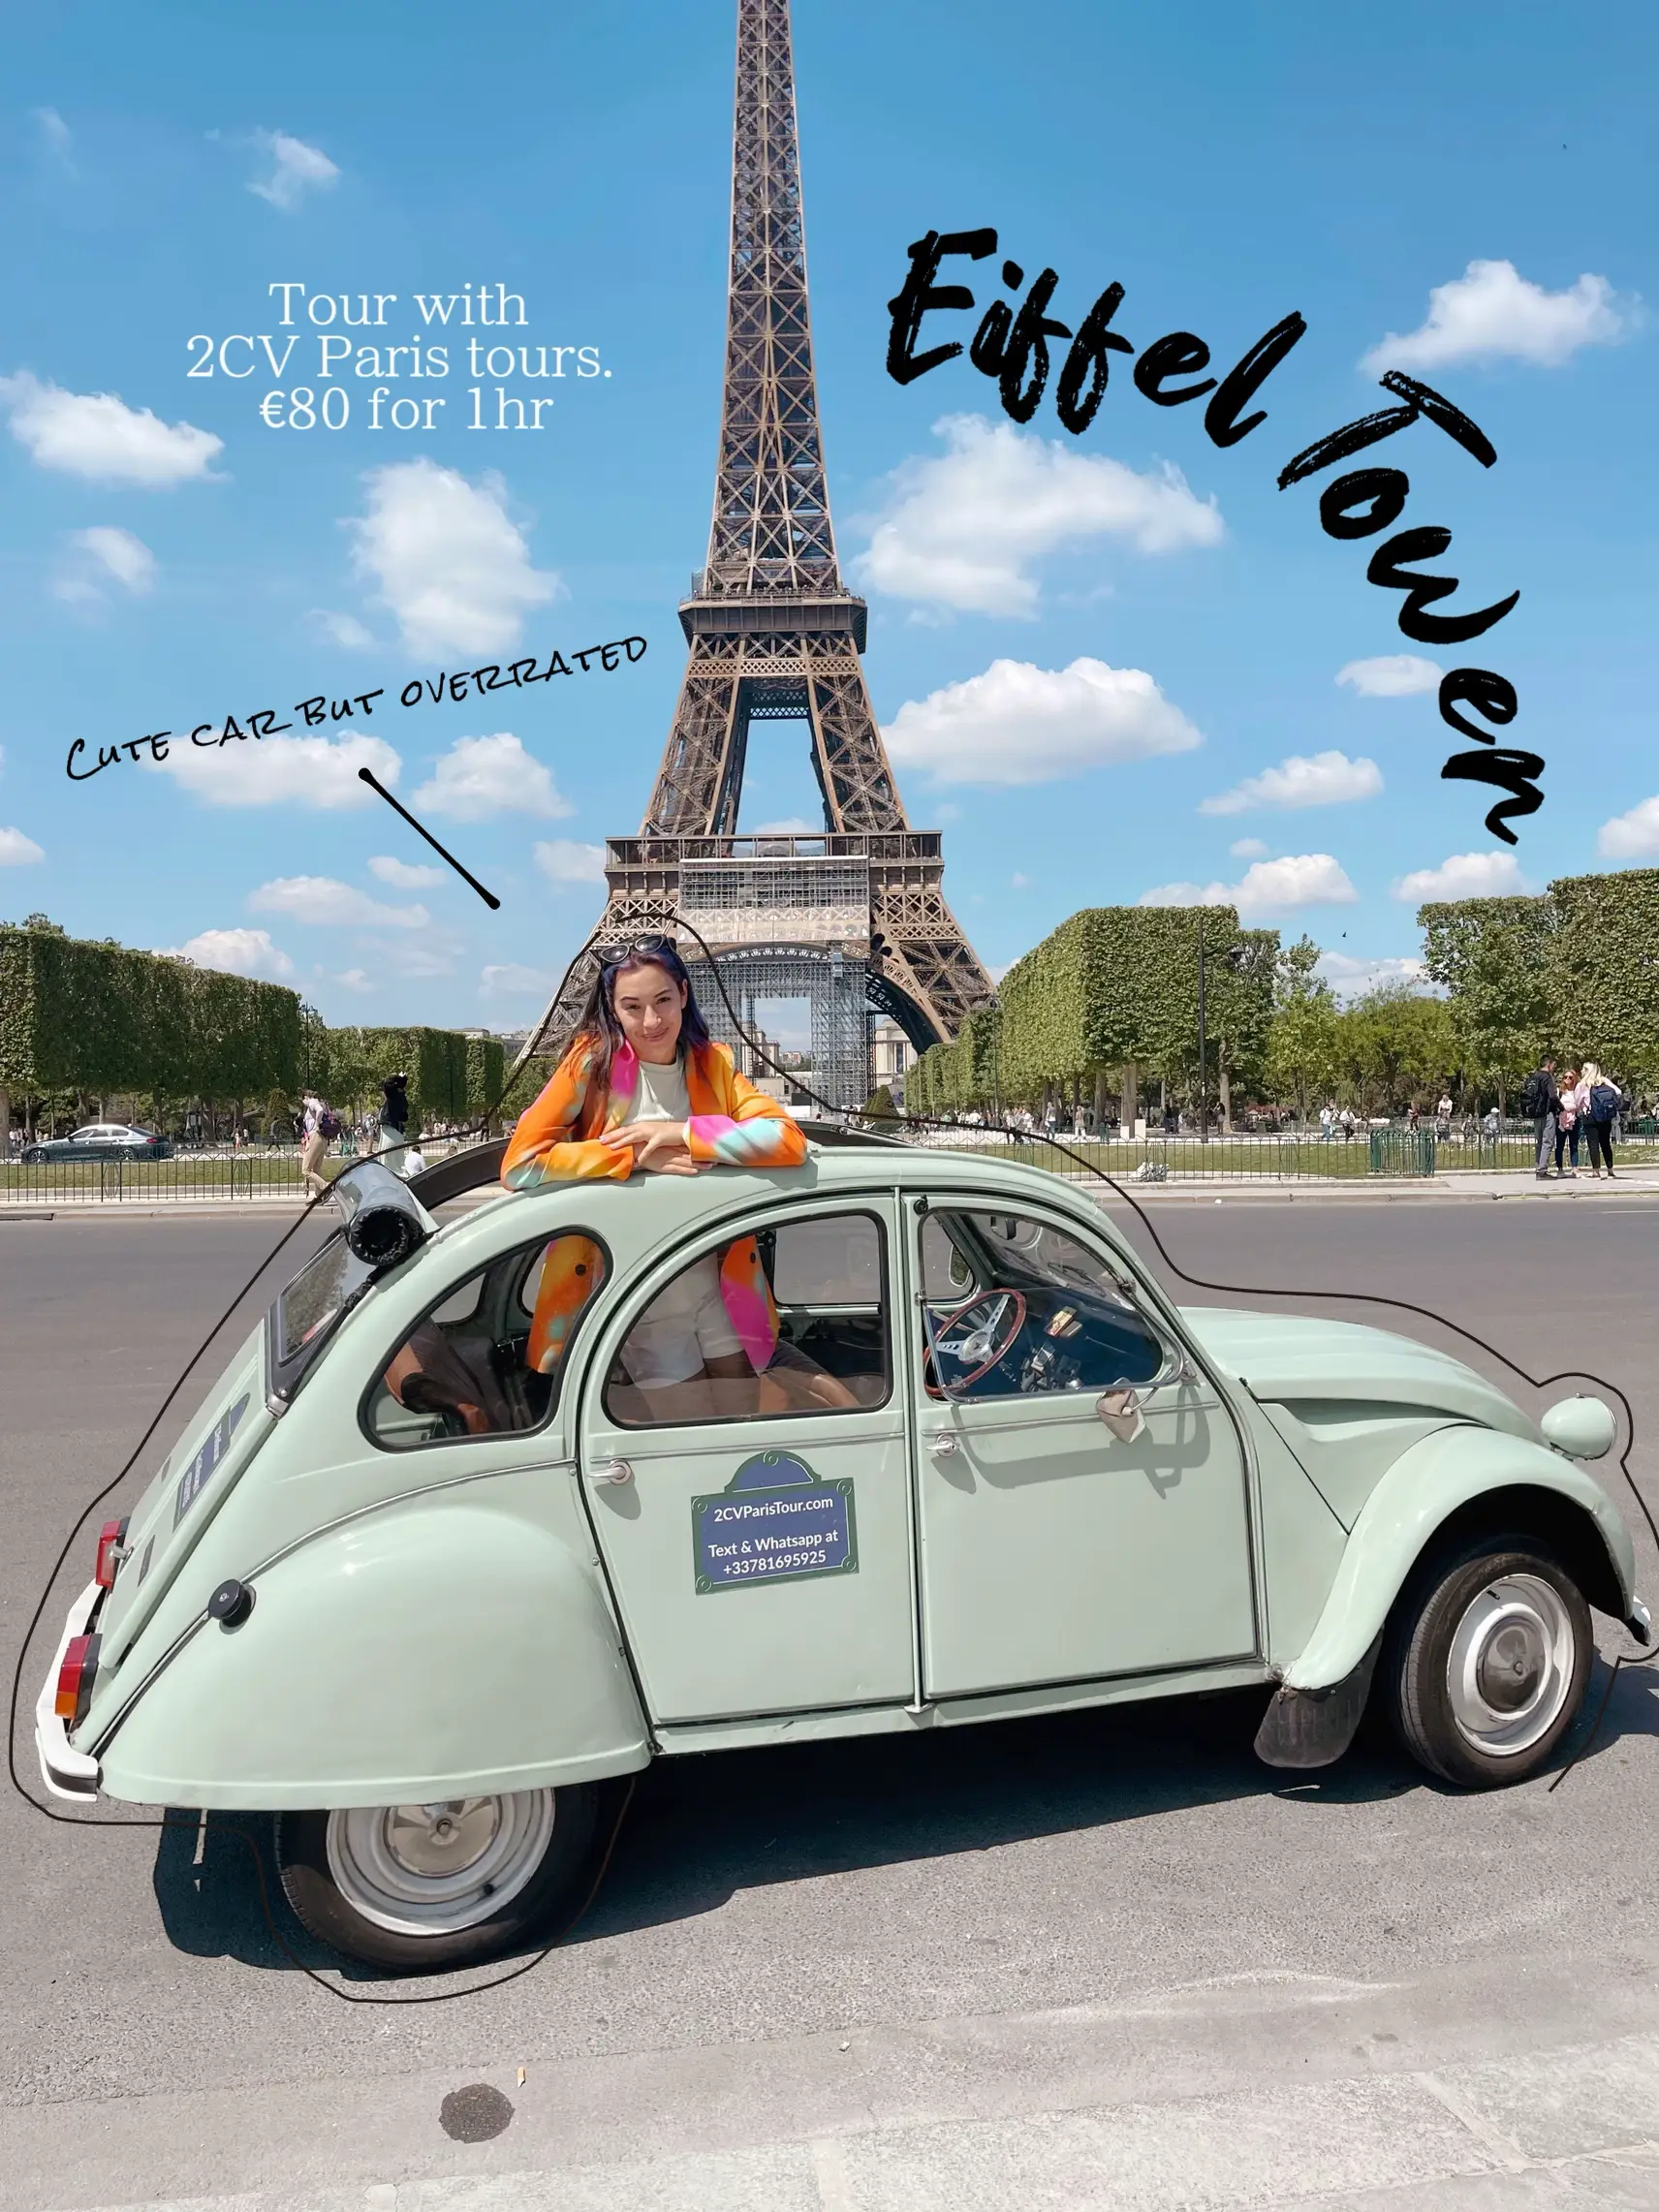 Teal Vintage Car Tour Paris - Lemon8 Search